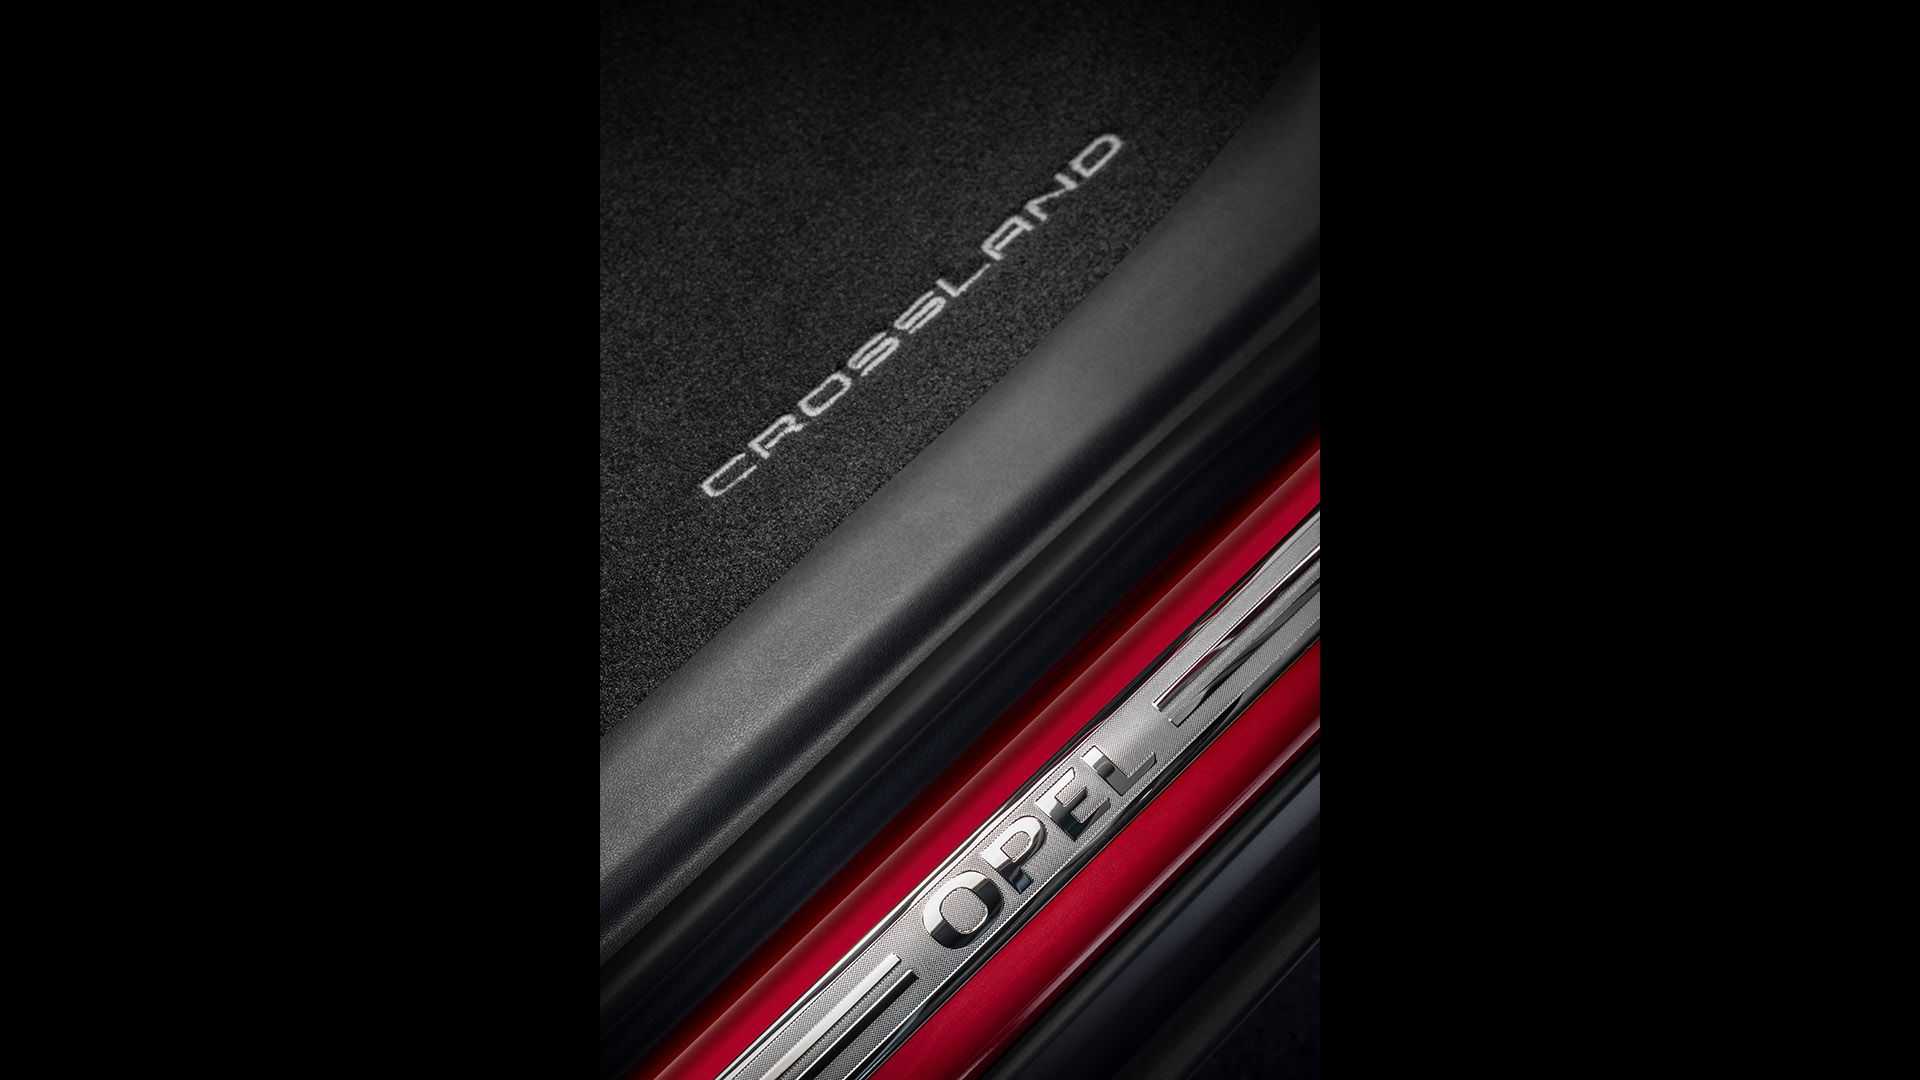 Makyajlı 2021 Opel Crossland tanıtıldı: İşte tasarımı ve özellikleri